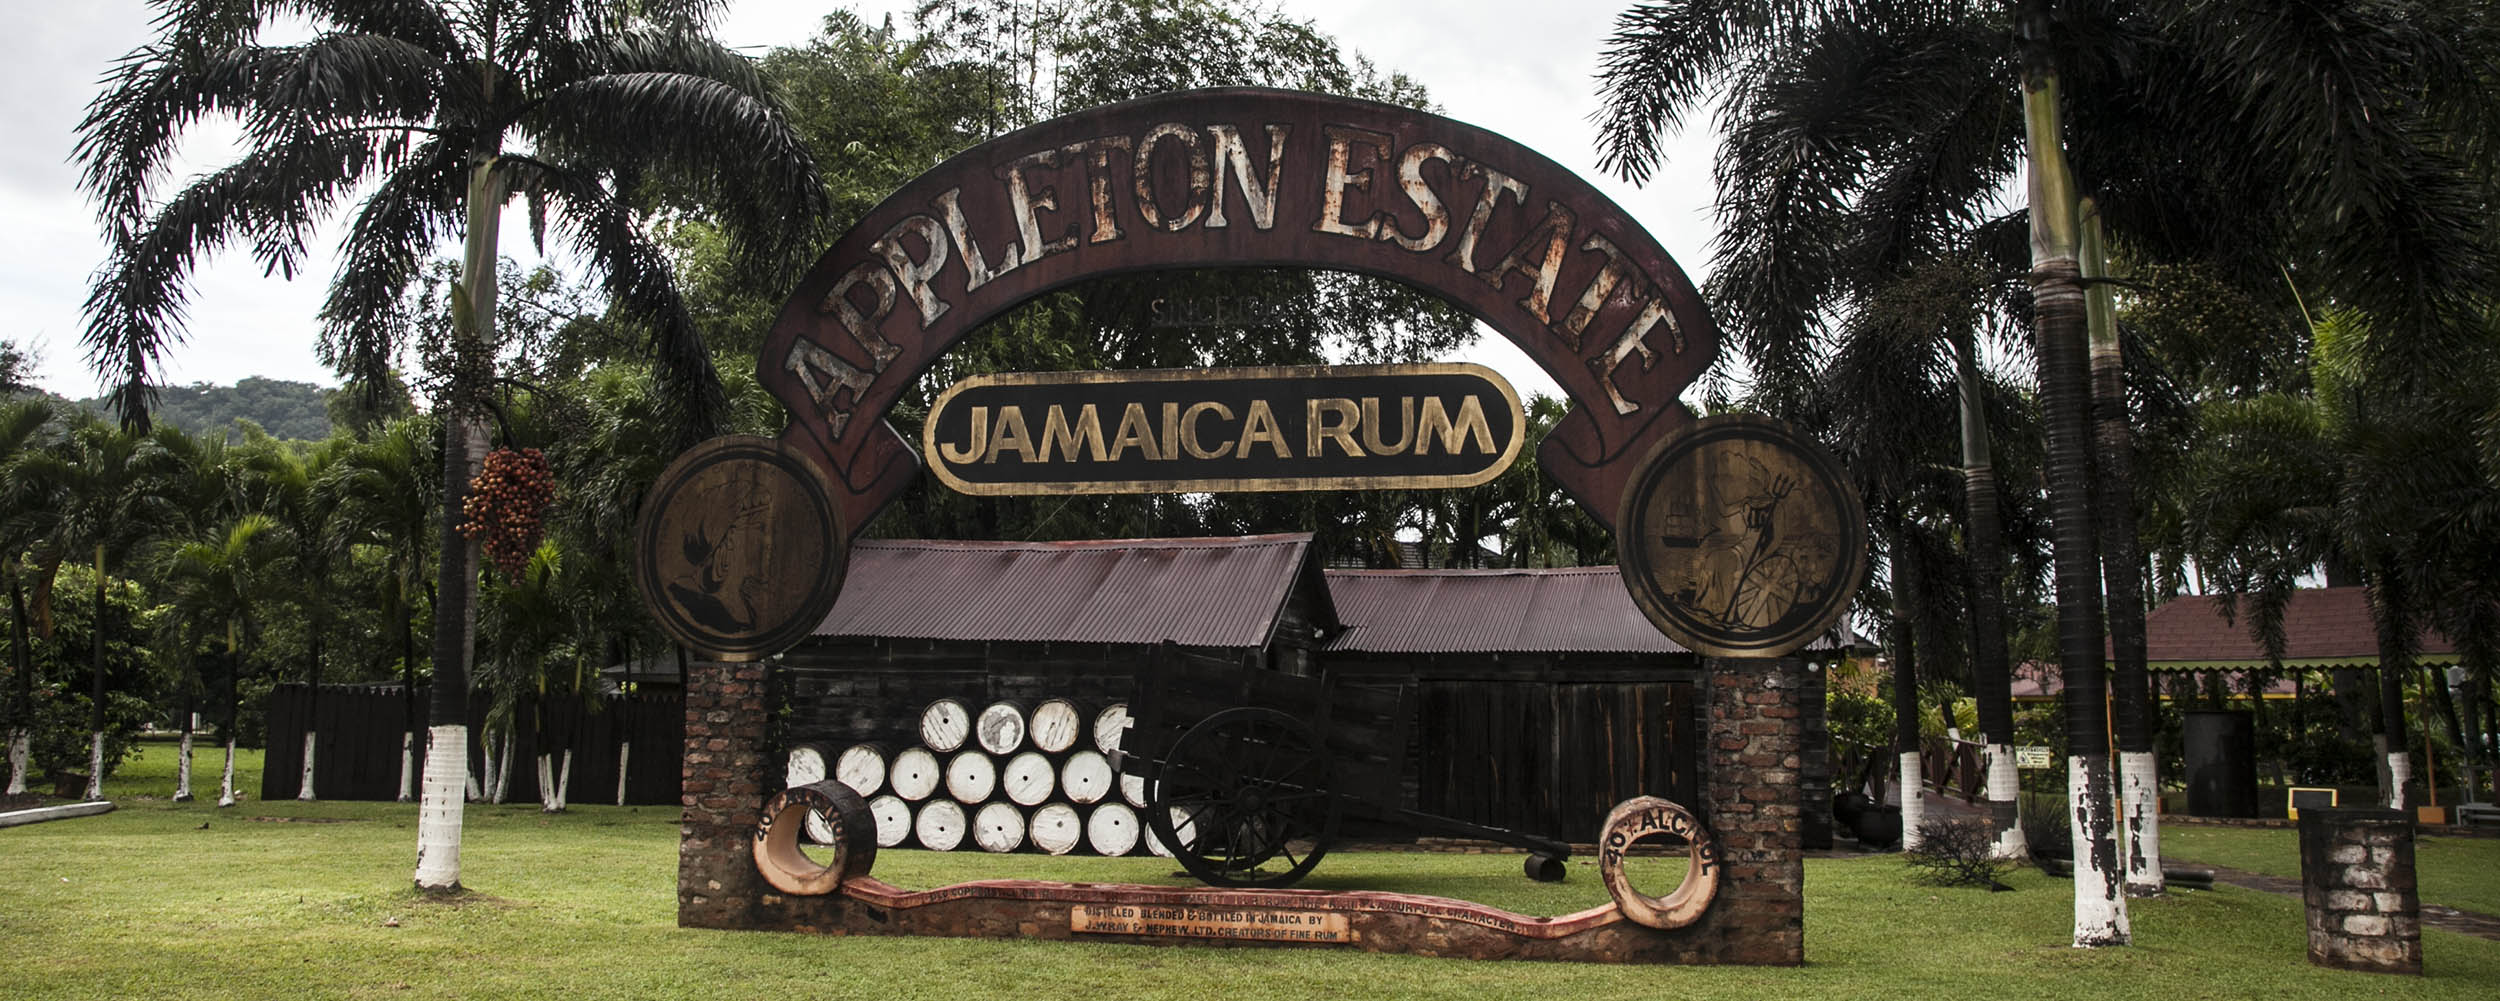 Appleton Estate Rum Factory - Jamaica